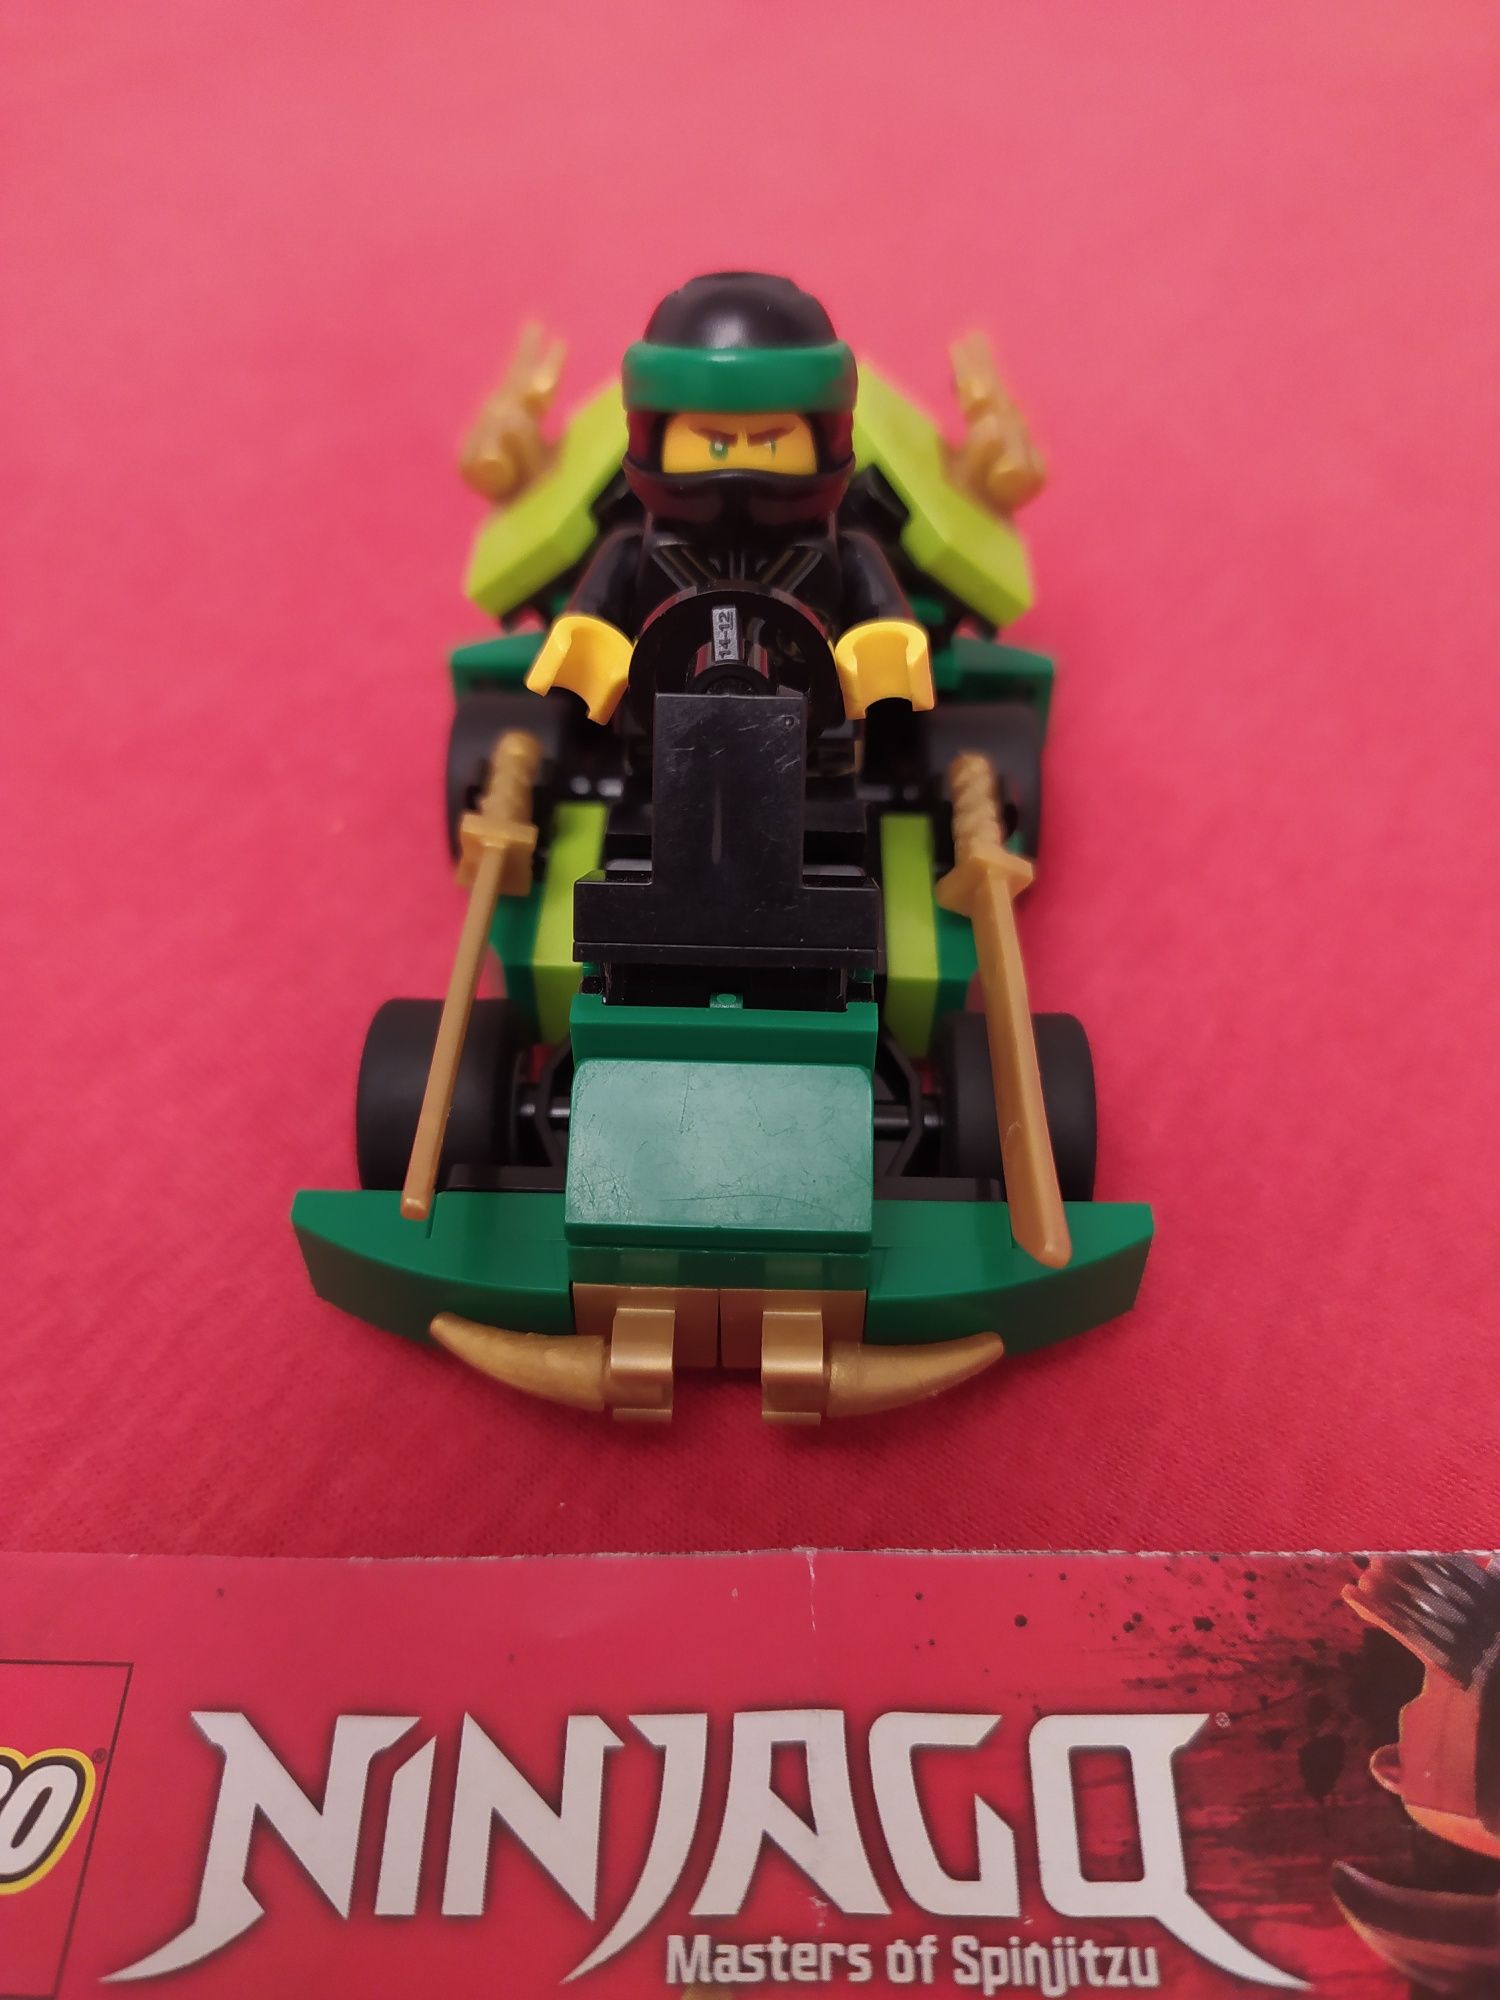 LEGO Ninjago 30532